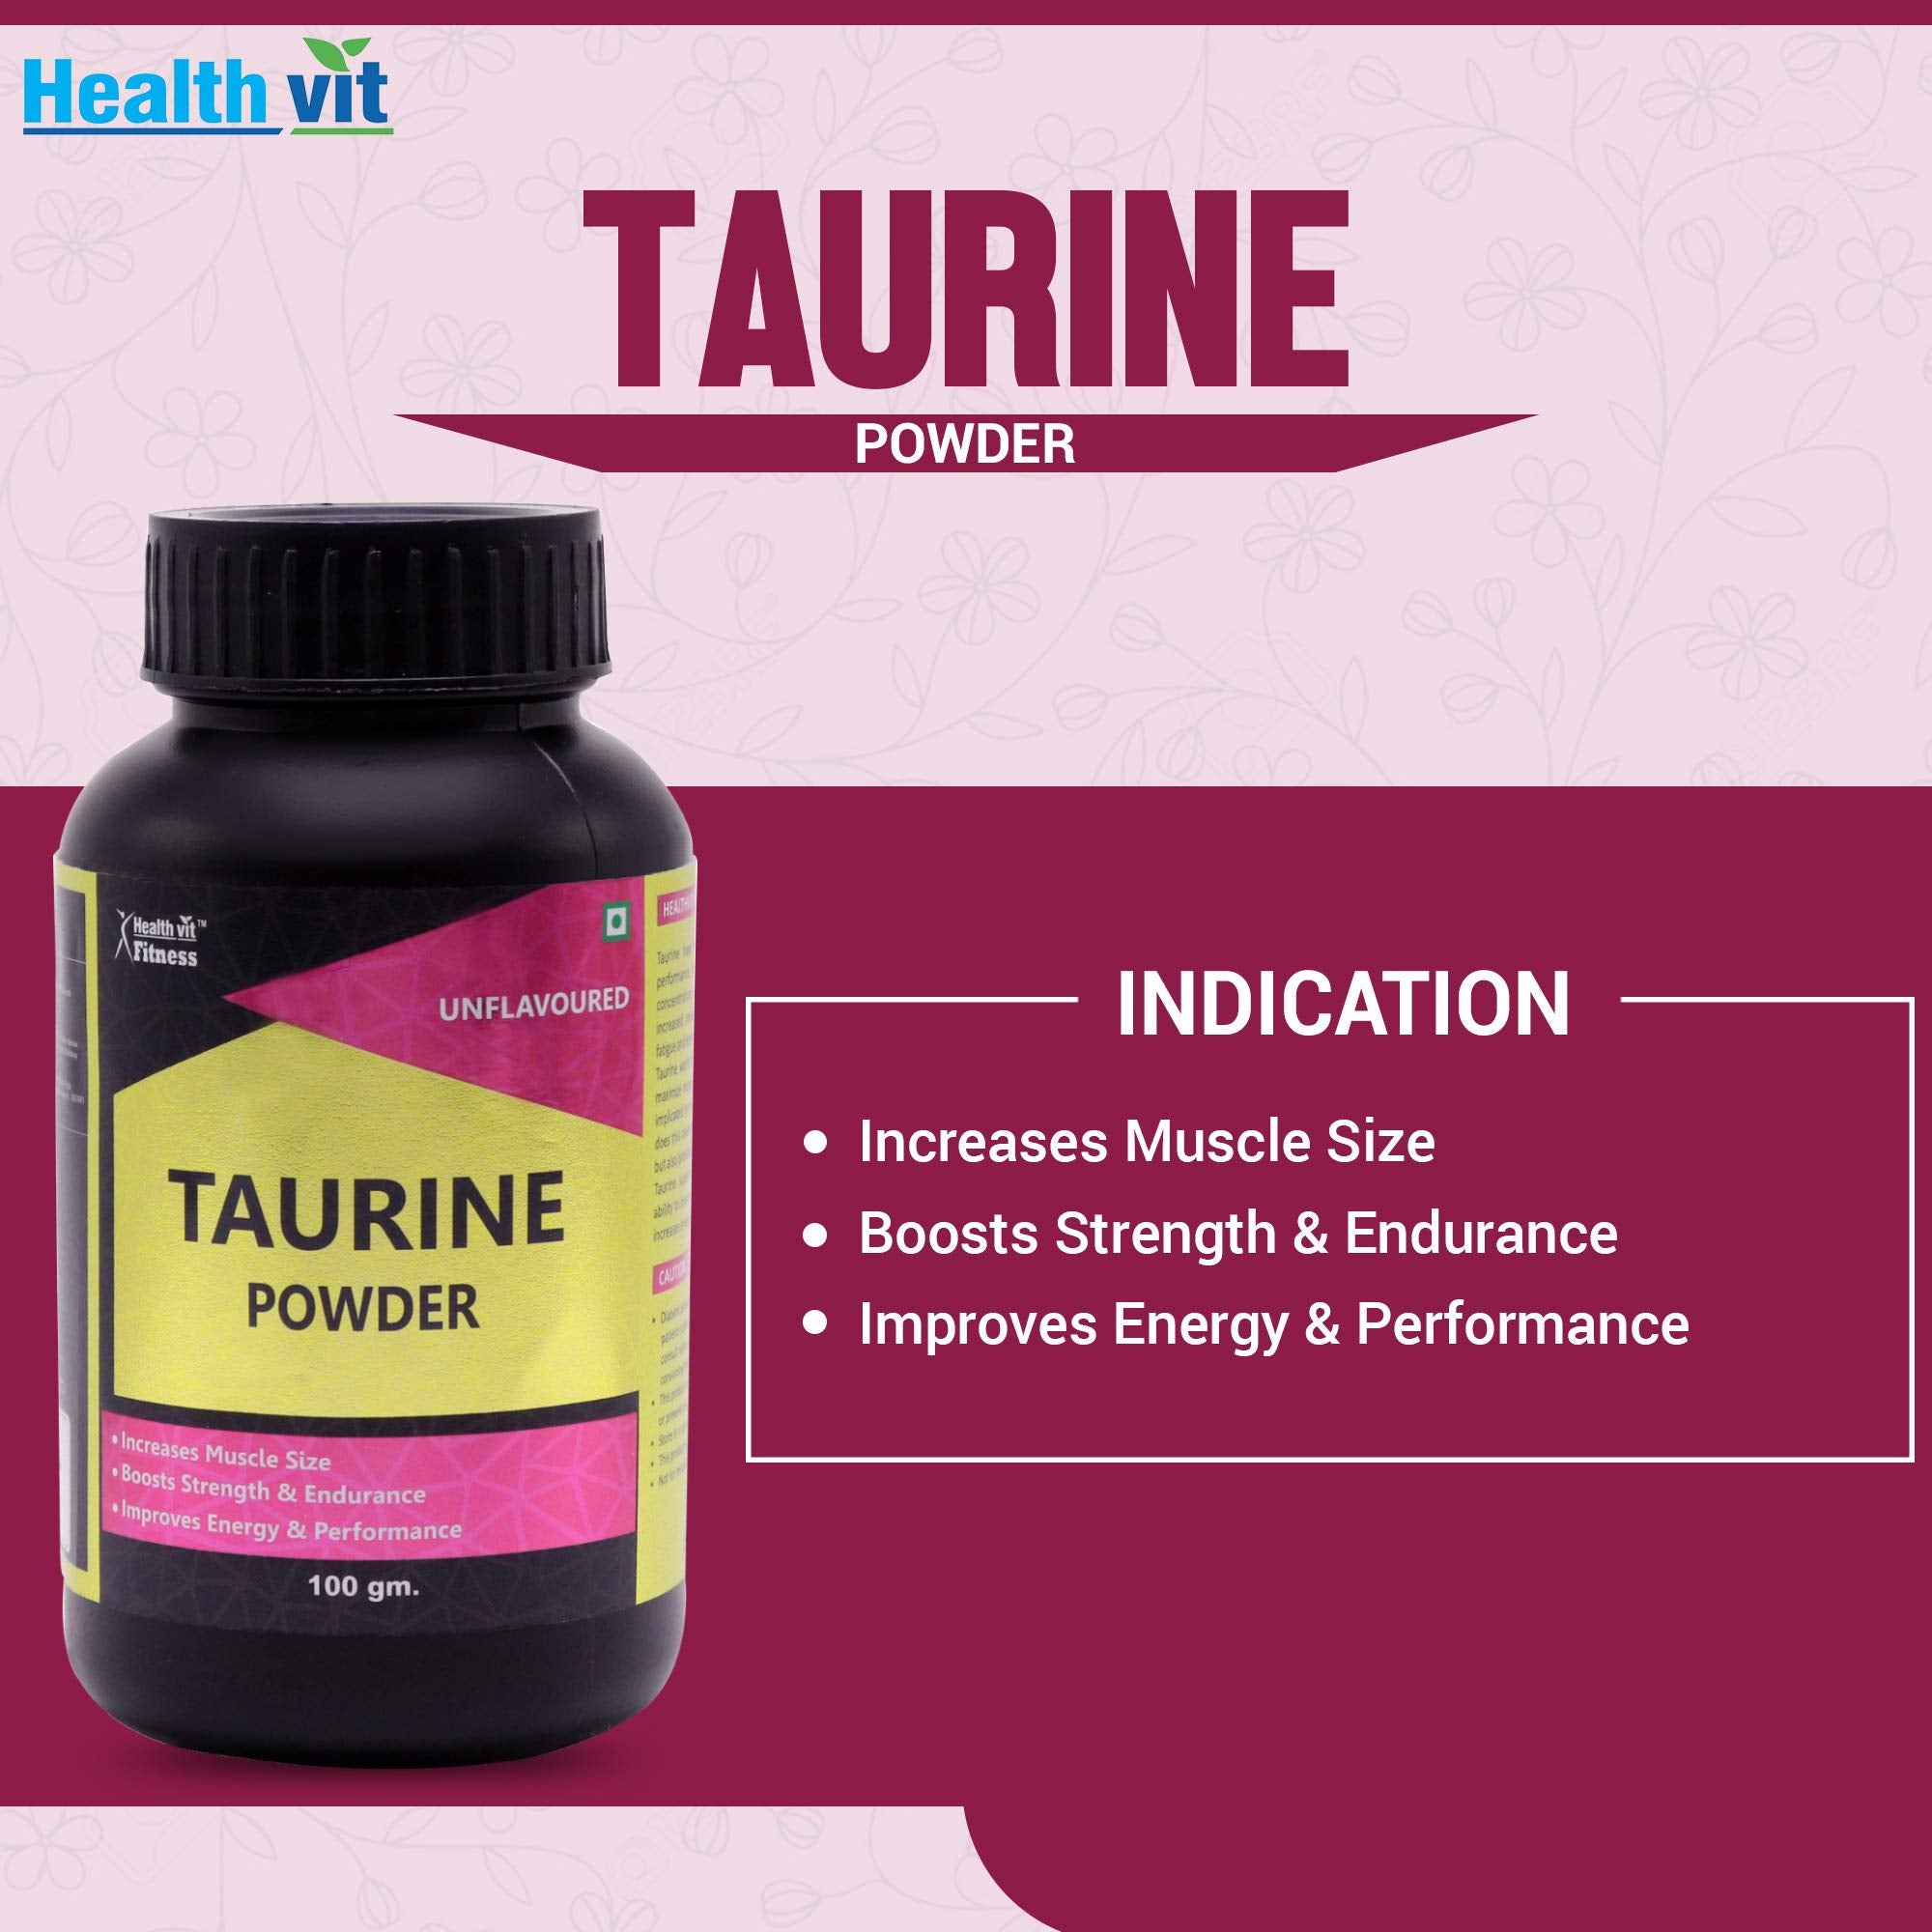 Healthvit Fitness Taurine Powder 100gm – Unflavoured